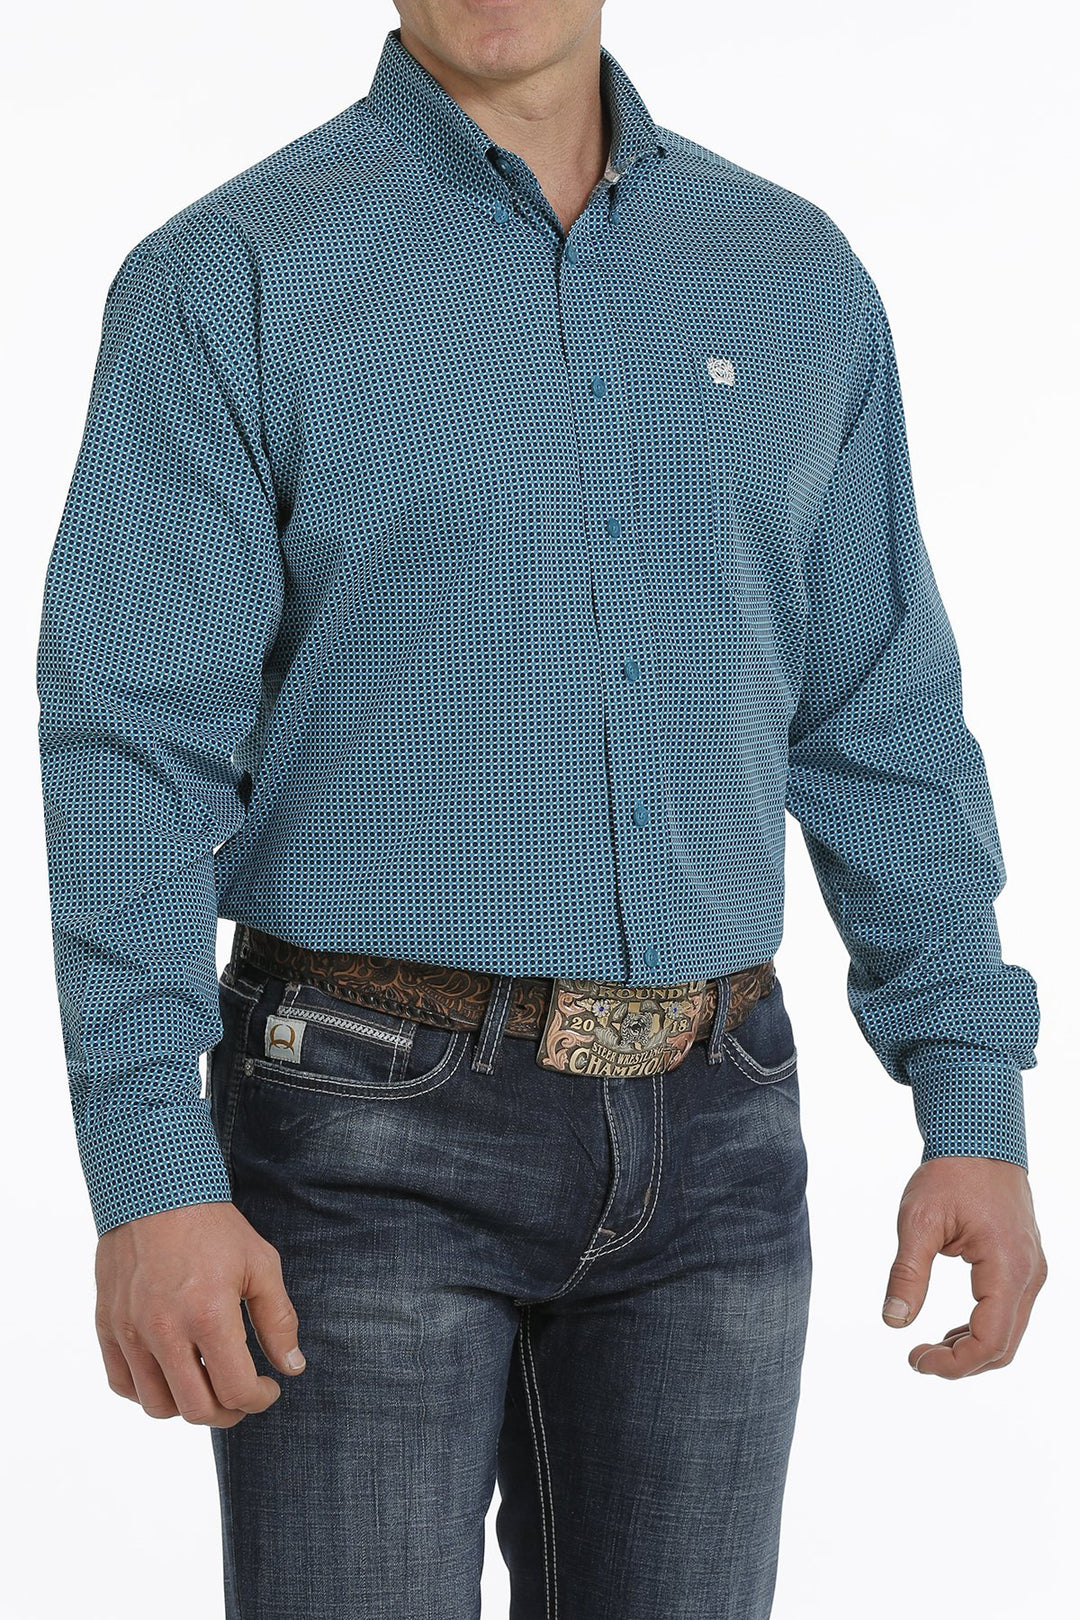 Camicia western abbottonata con stampa geometrica Cinch da uomo - MTW1105308